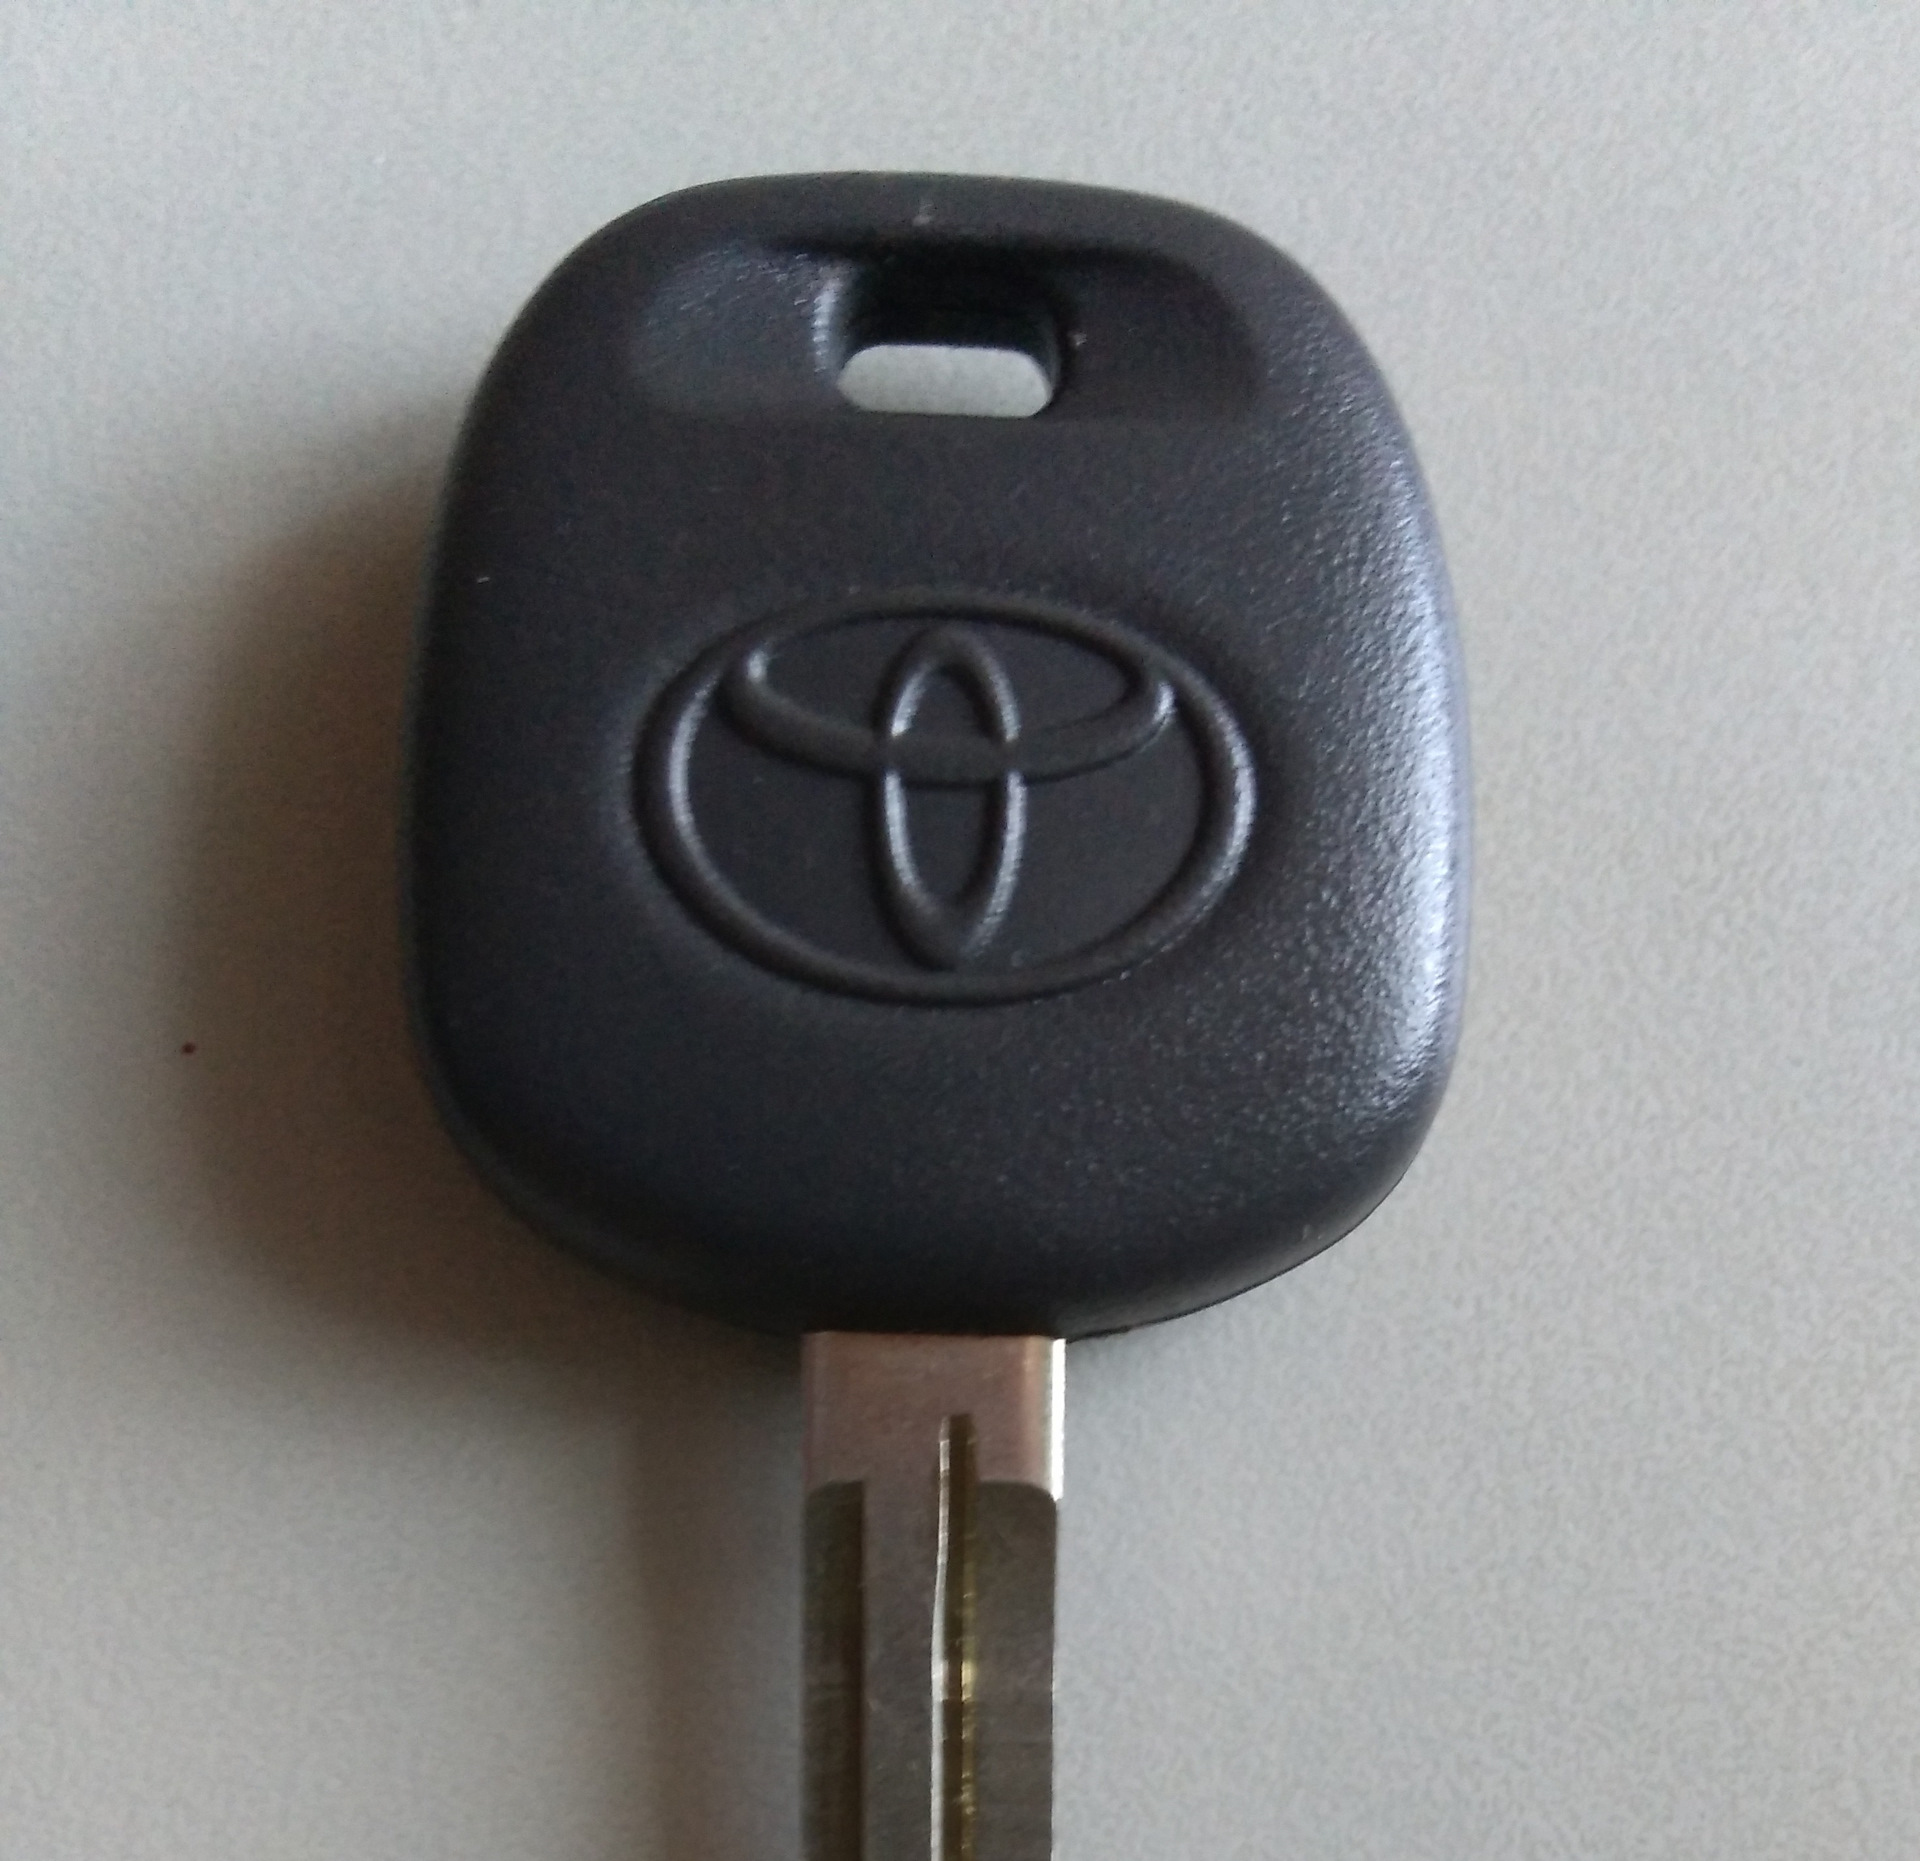 Ключ тойота рав. Ключ Toyota rav4. Ключ зажигания Toyota rav4 2011. Тойота рав 4 ключ зажигания. Ключ Тойота рав 4 2014.